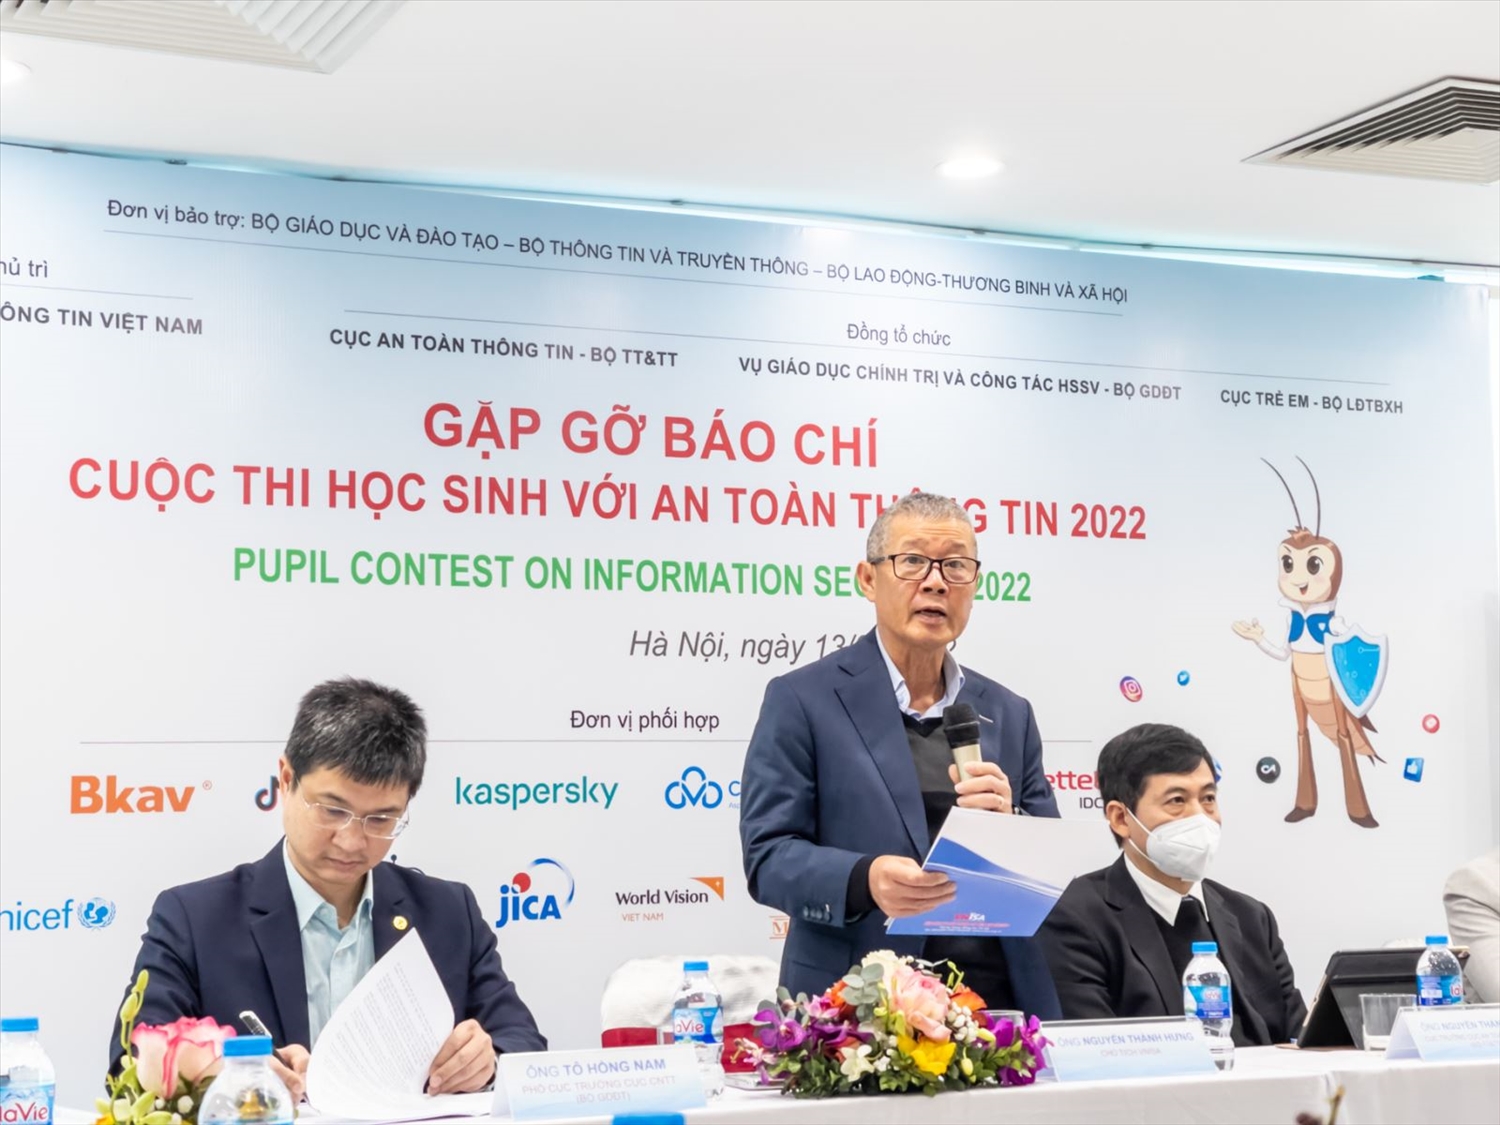 Ông Nguyễn Thành Hưng, Chủ tịch VNISA thông tin về cuộc thi "Học sinh với An toàn thông tin năm 2022" lần đầu tiên được tổ chức.